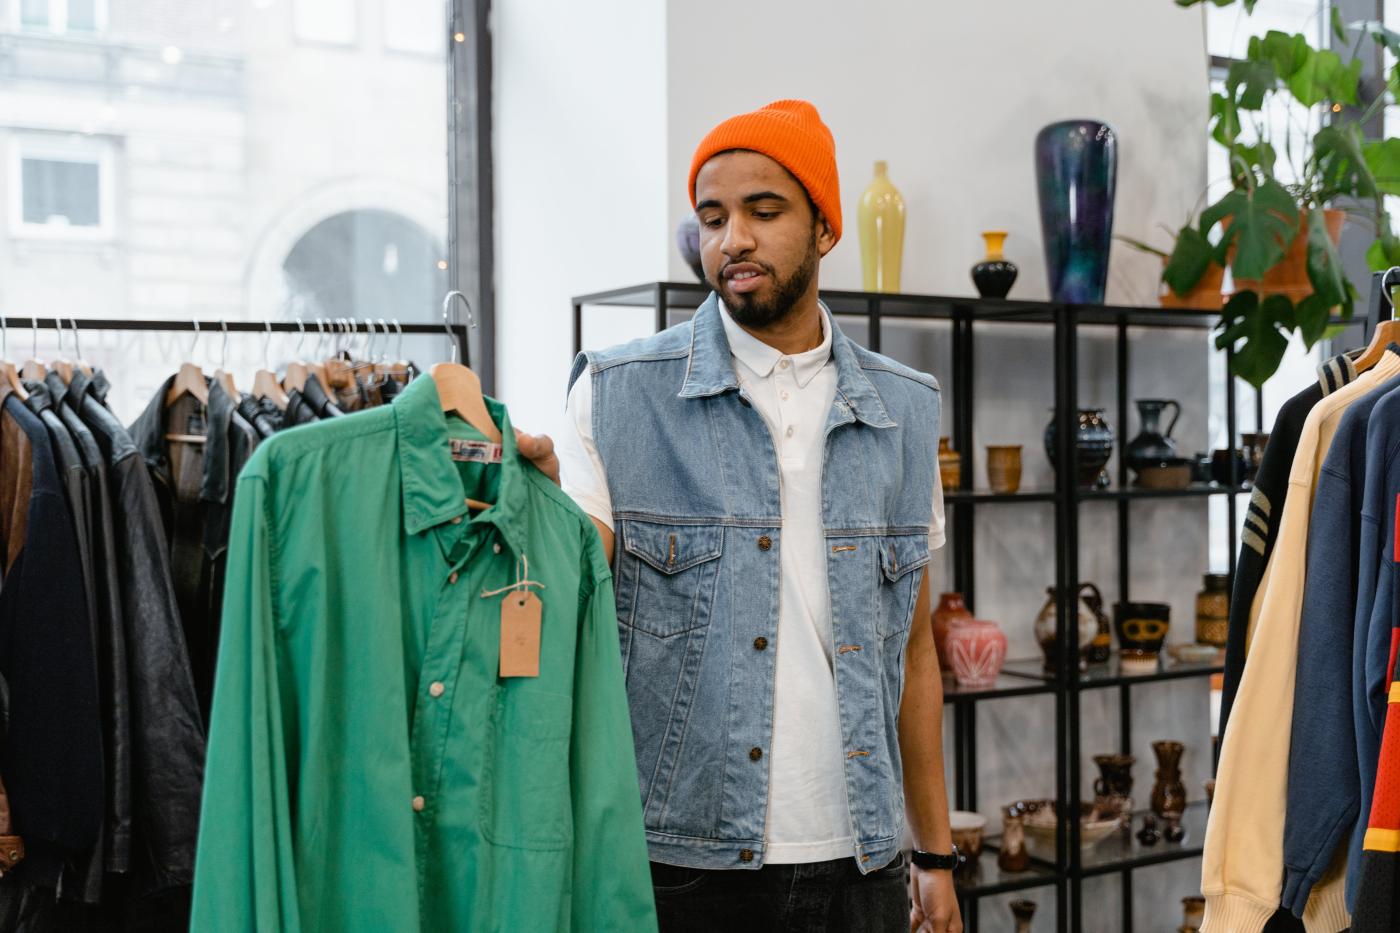 Mann mit oranger Haube und Jeansjacke hält ein grünes Hemd in der Hand und schaut es an. Er steht in einem Vintage store.